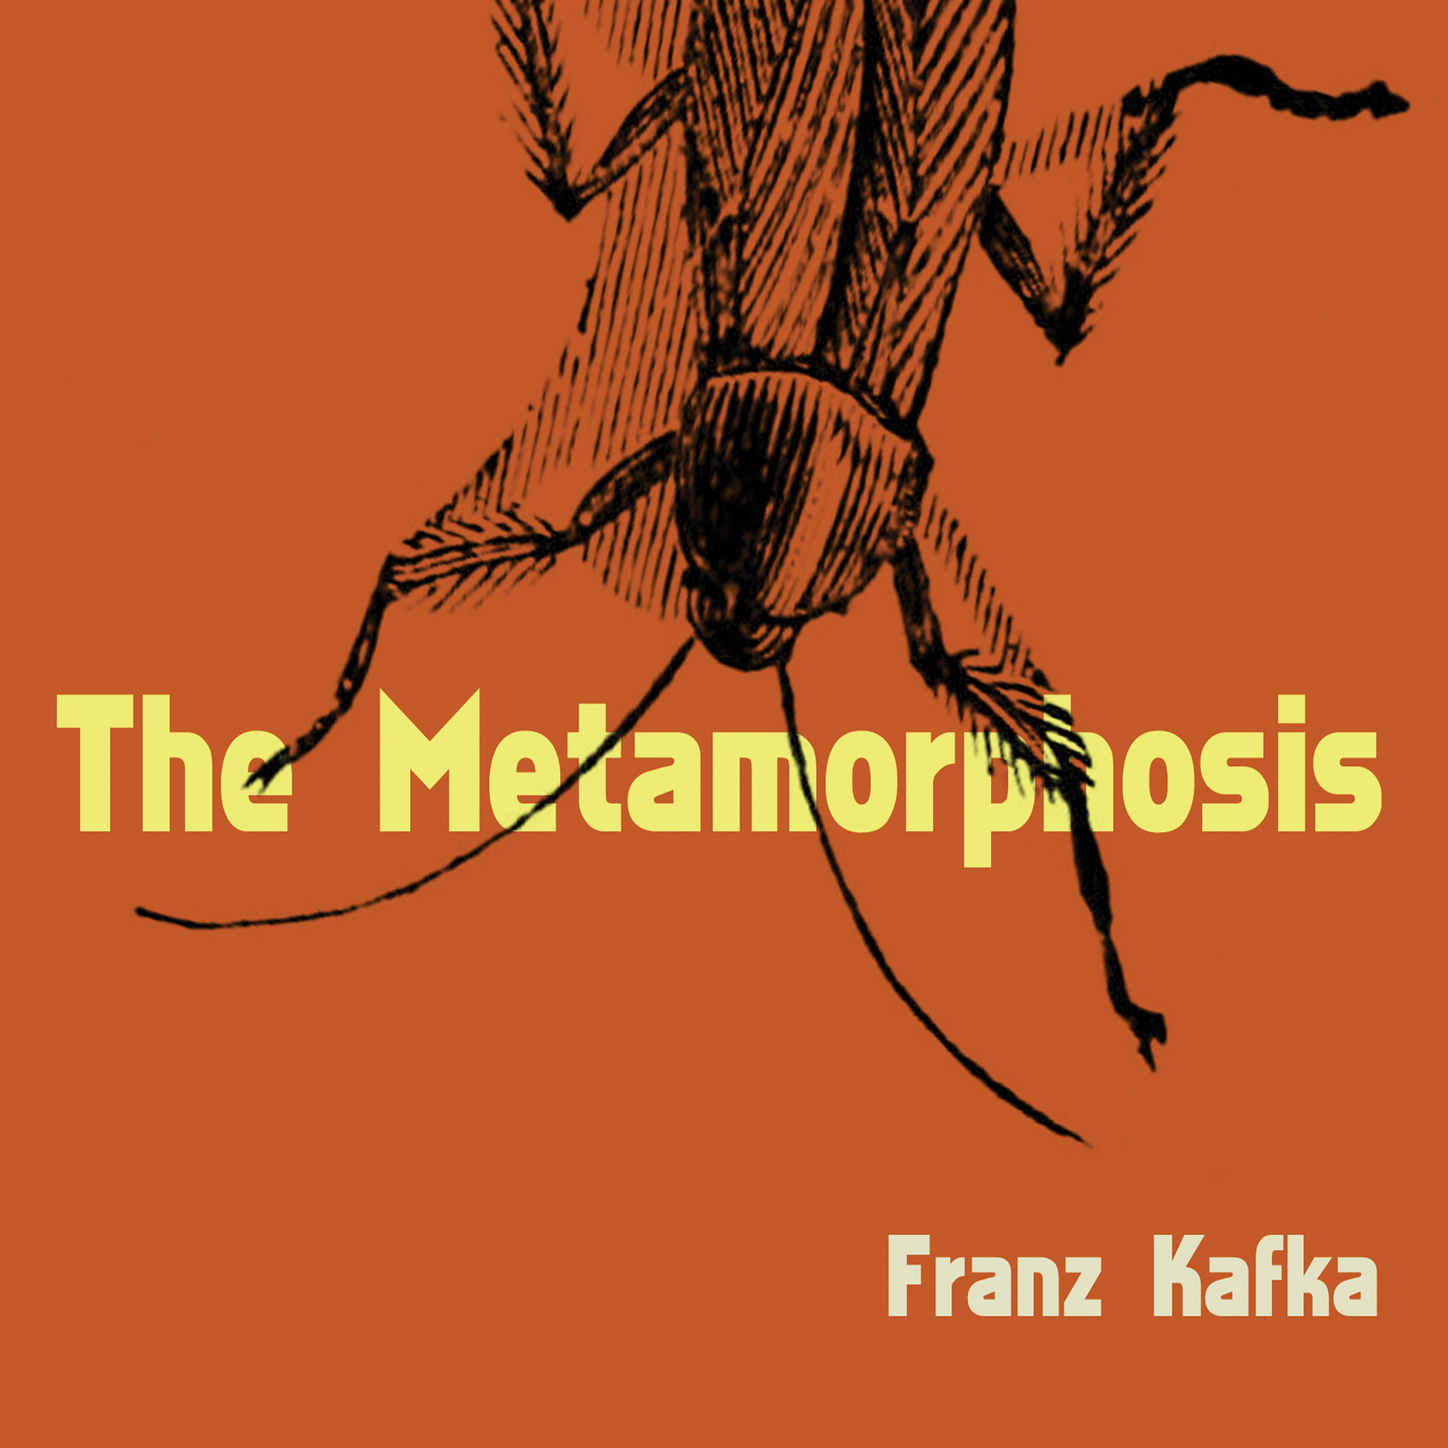 Аудиокнига метаморфозы. Franz Kafka Metamorphosis. The Metamorphosis by Franz Kafka. Metamorphosis обложка.